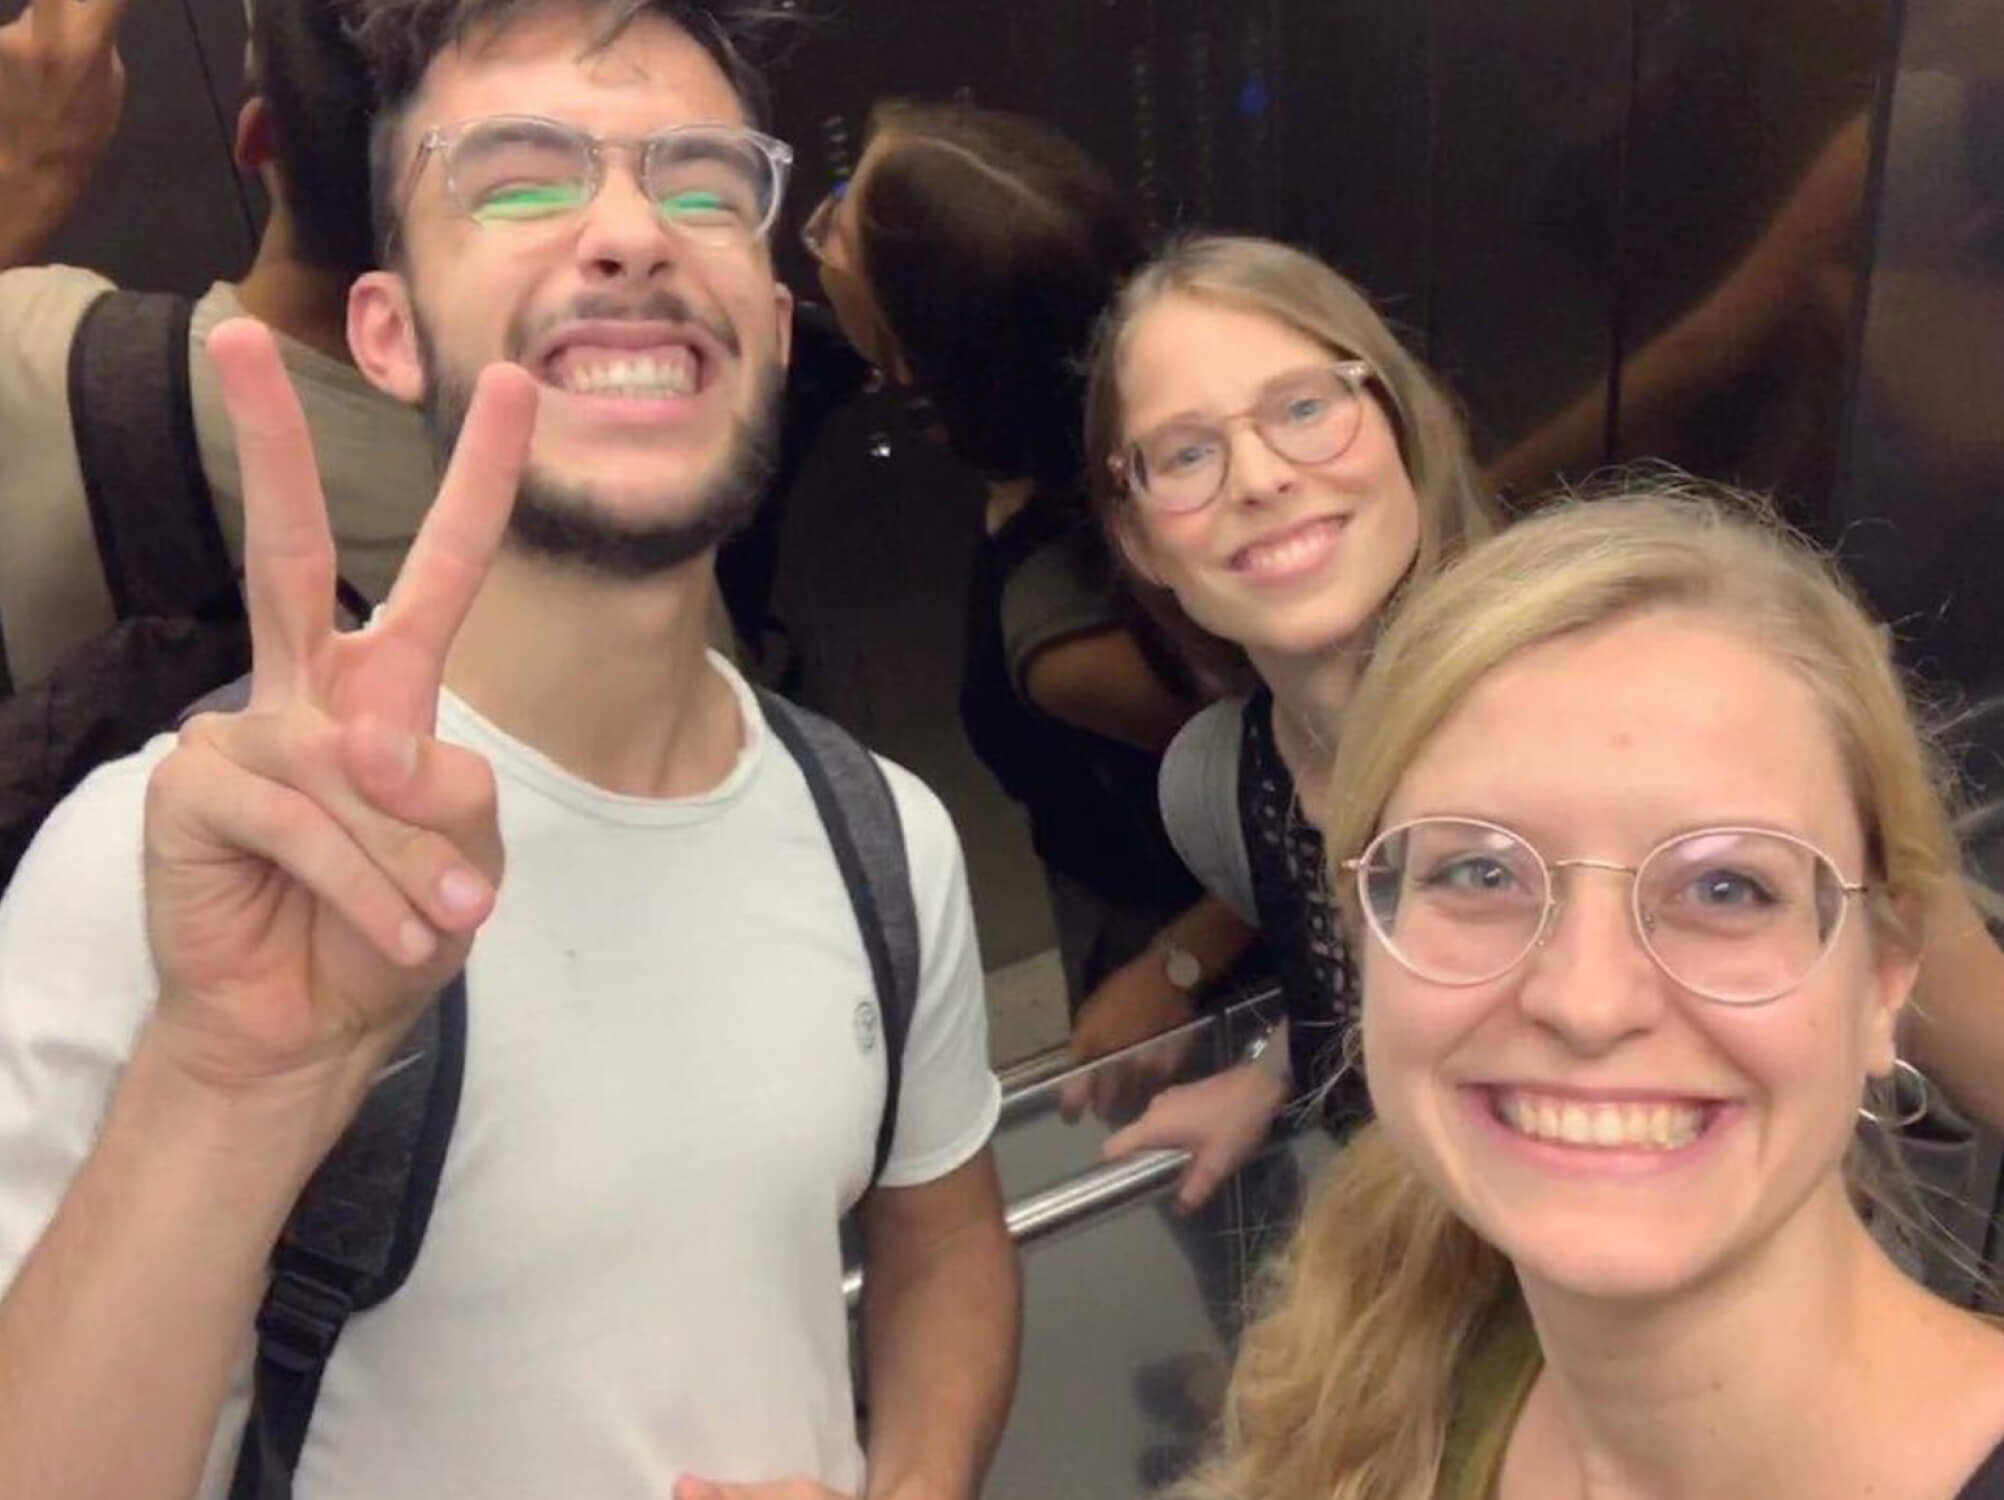 Selfie of the founding members of 4Germany UG in August 2019